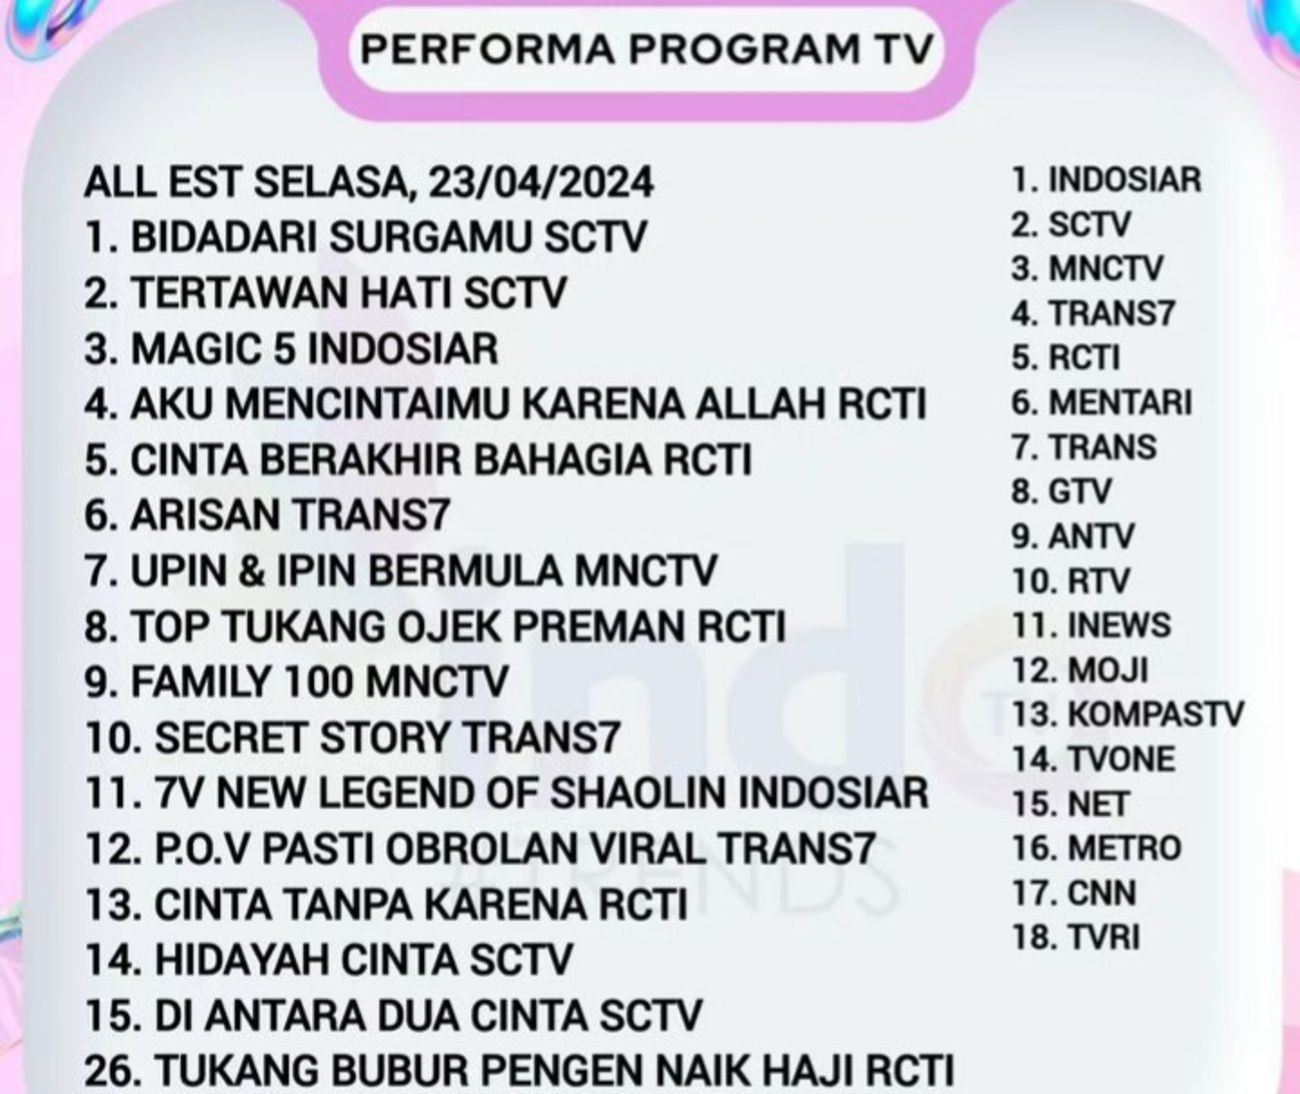 Magic 5 Indosiar Tembus Peringkat 3 Rating TV, Tepat Dibawah Tertawan Hati SCTV